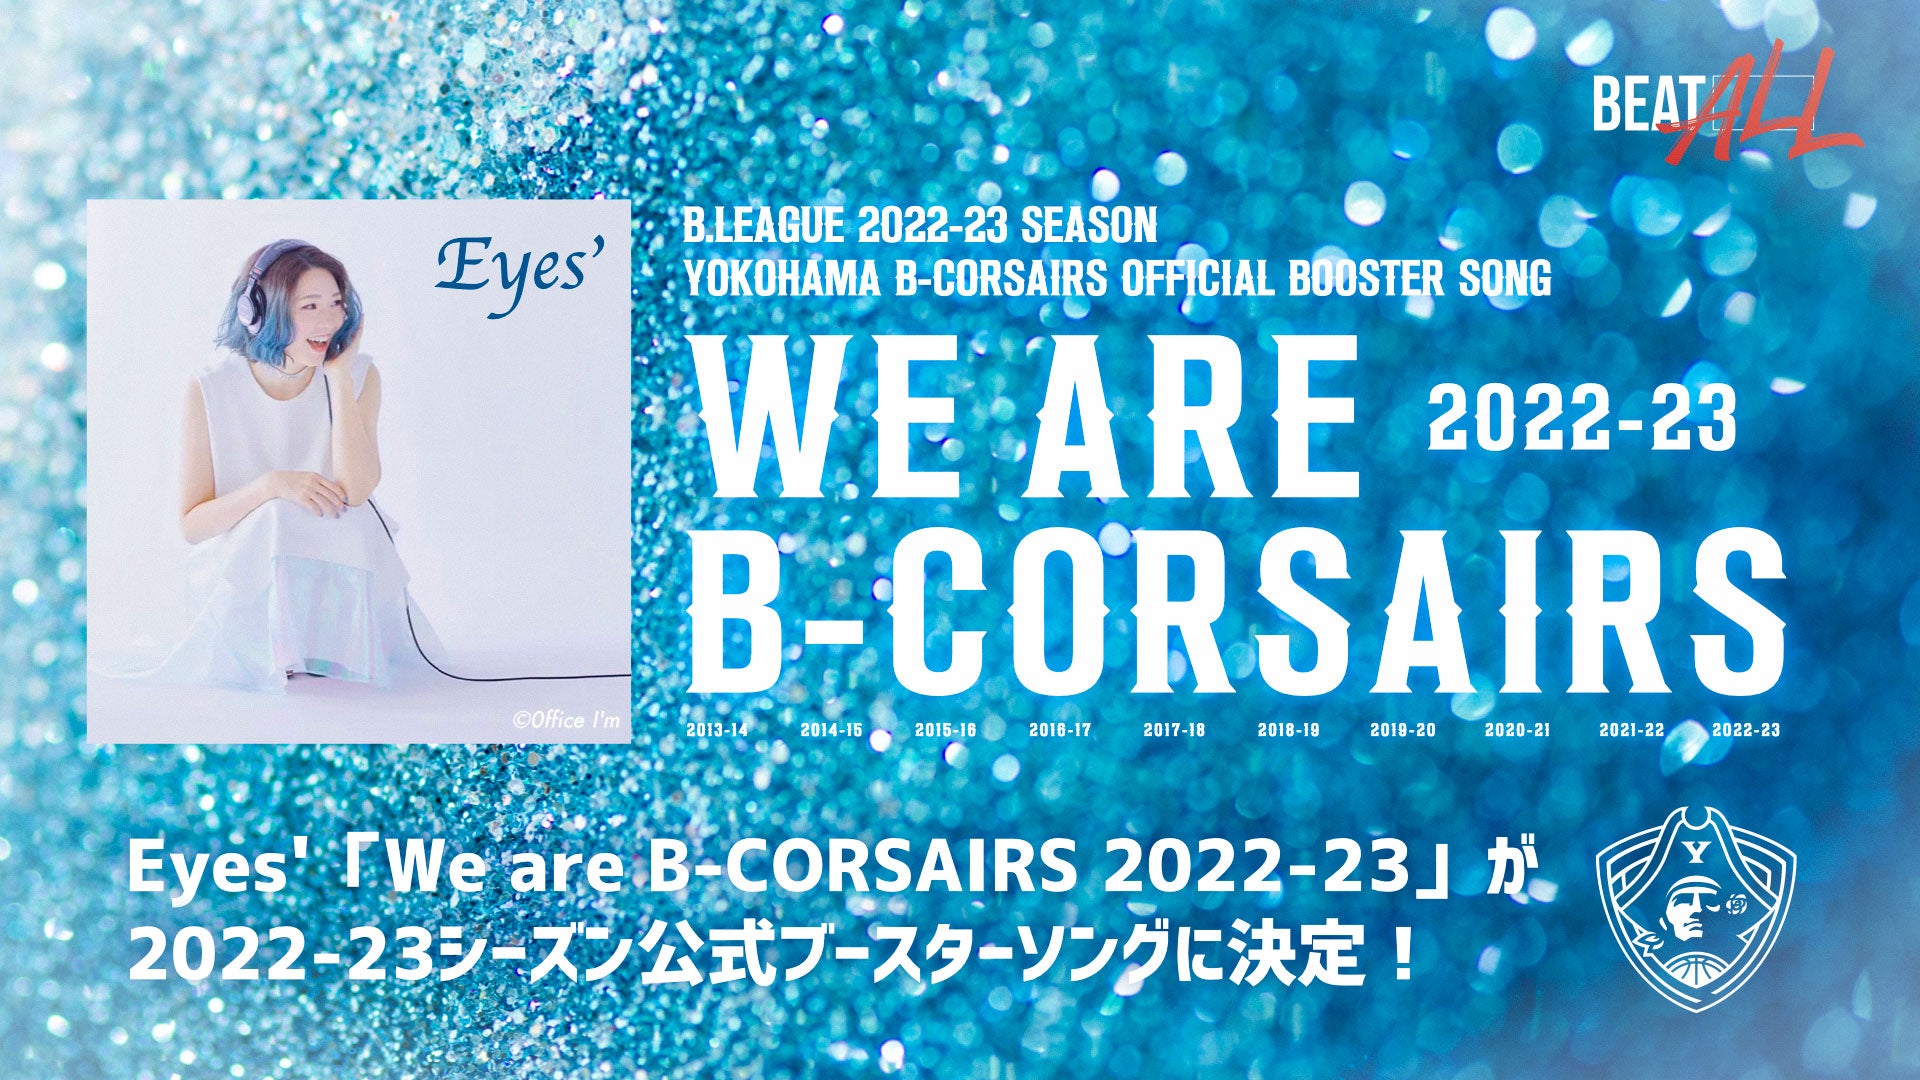 Eyes'「We are B-CORSAIRS 2022-23」が2022-23シーズン公式ブースターソングに決定！今シーズンもアリーナでGO!GO!B-COR!